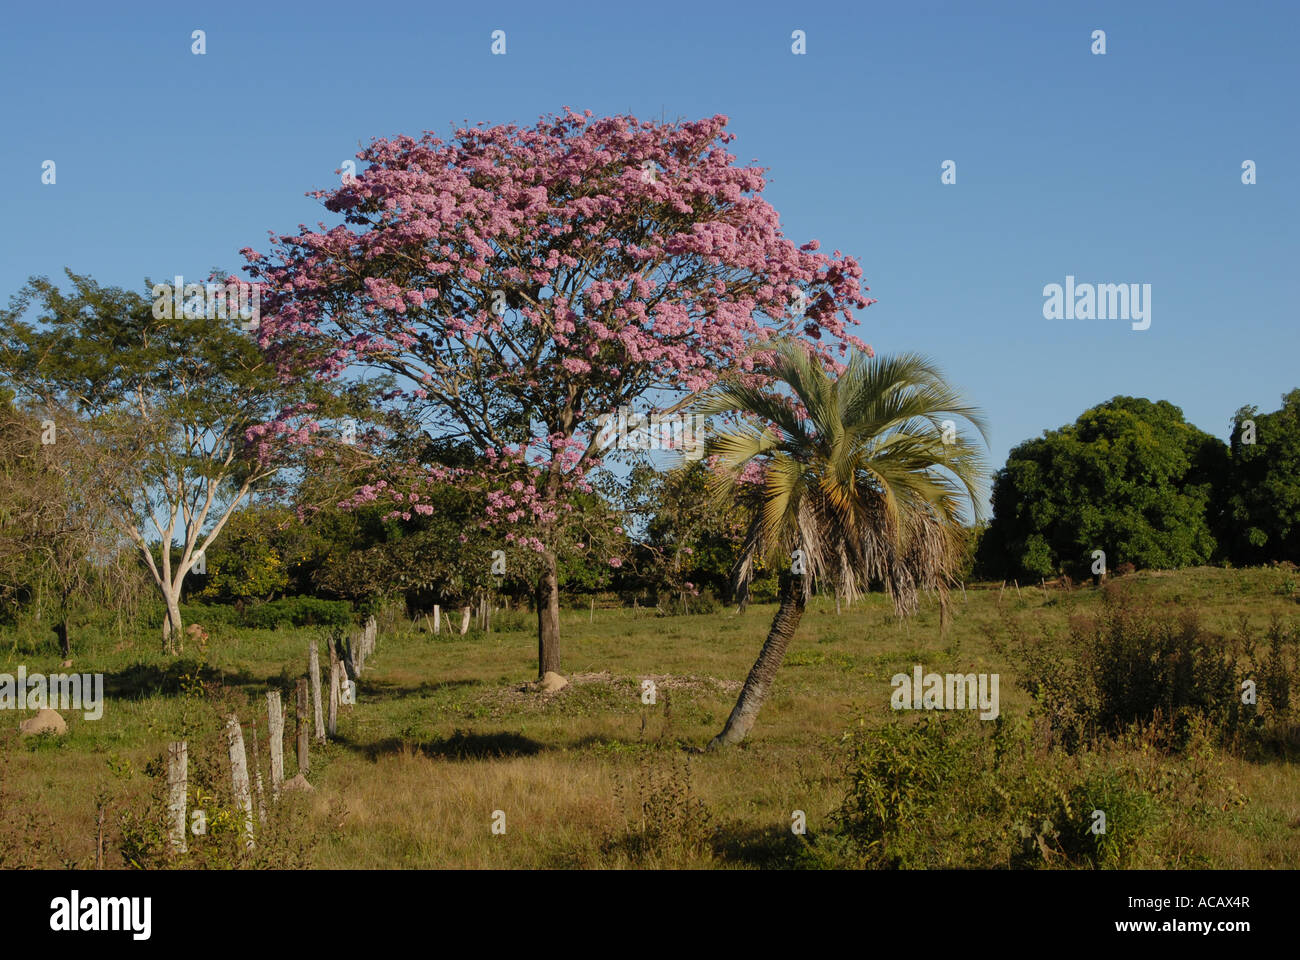 Árbol de lapacho (Tabebuia heptaphylla) con flores de color rosa, Paraguay Foto de stock